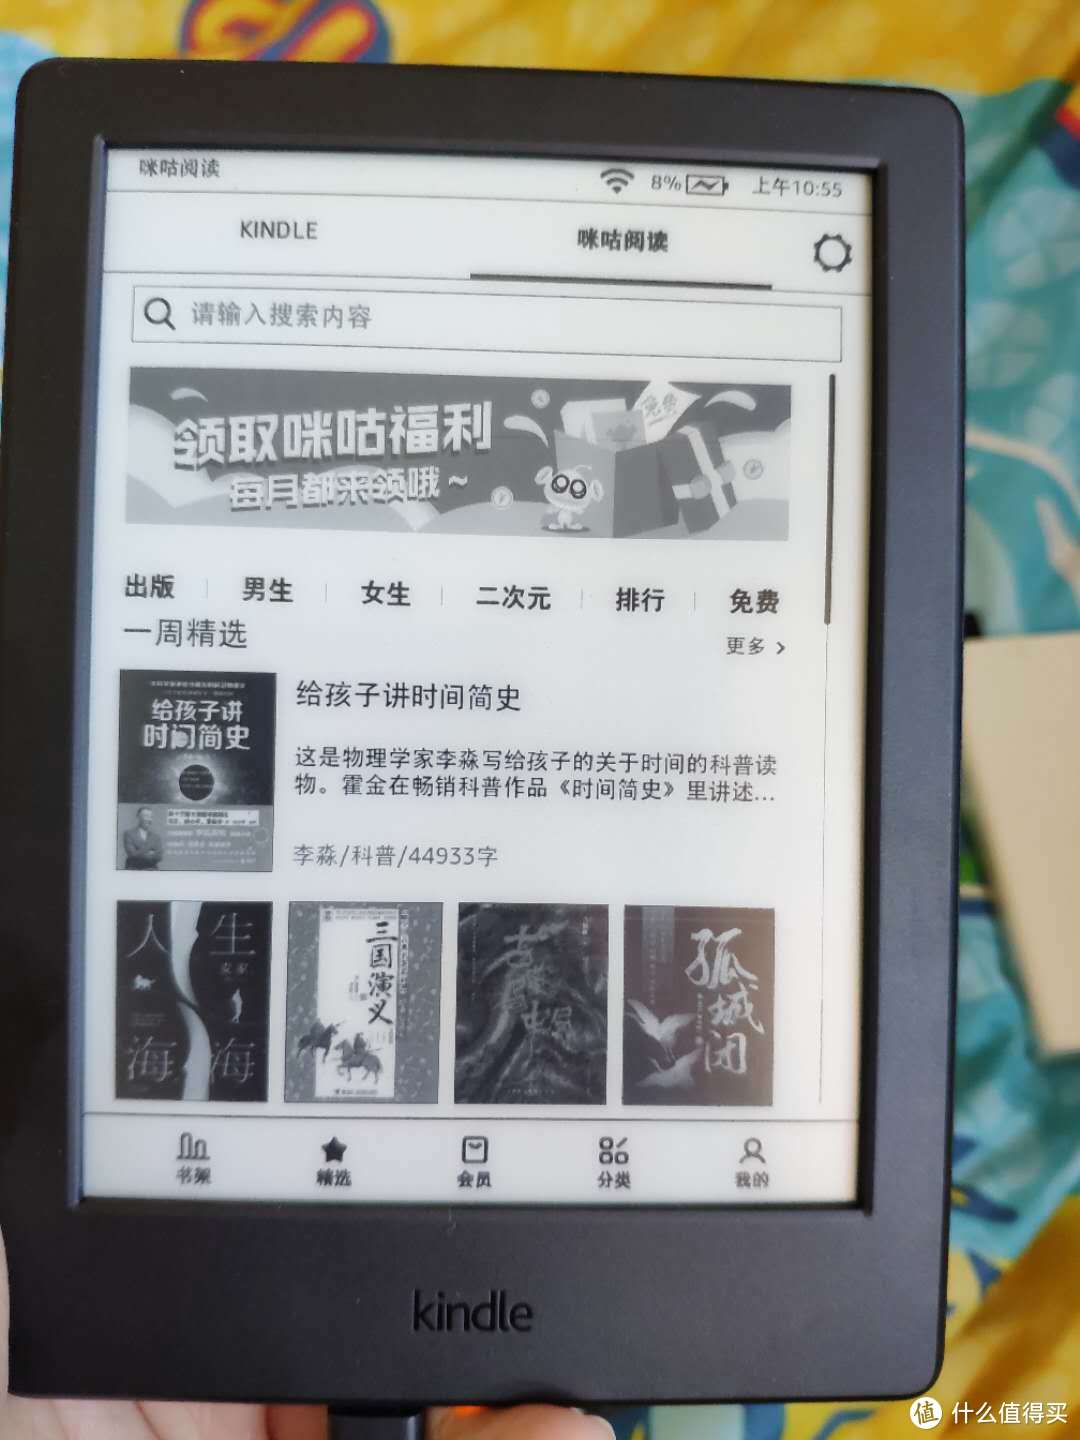 全新Kindle X咪咕版亚马逊电子书阅读器0元购，上车还是观望？？？